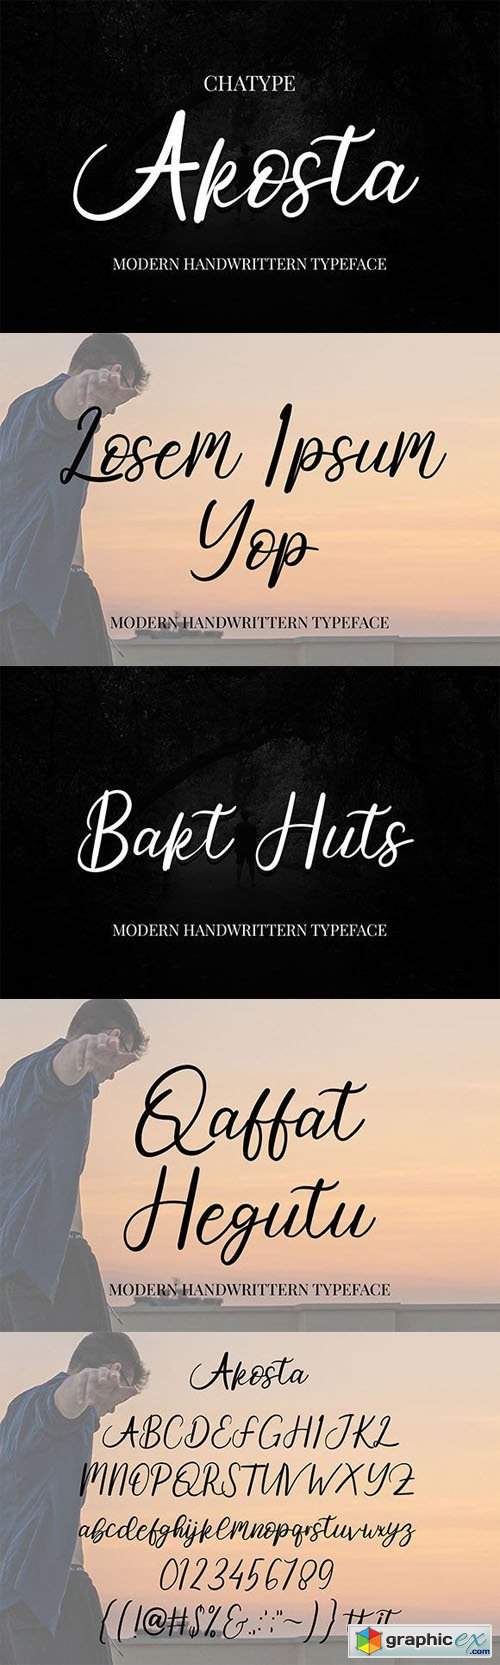 Akosta - Modern Handwritten Typeface